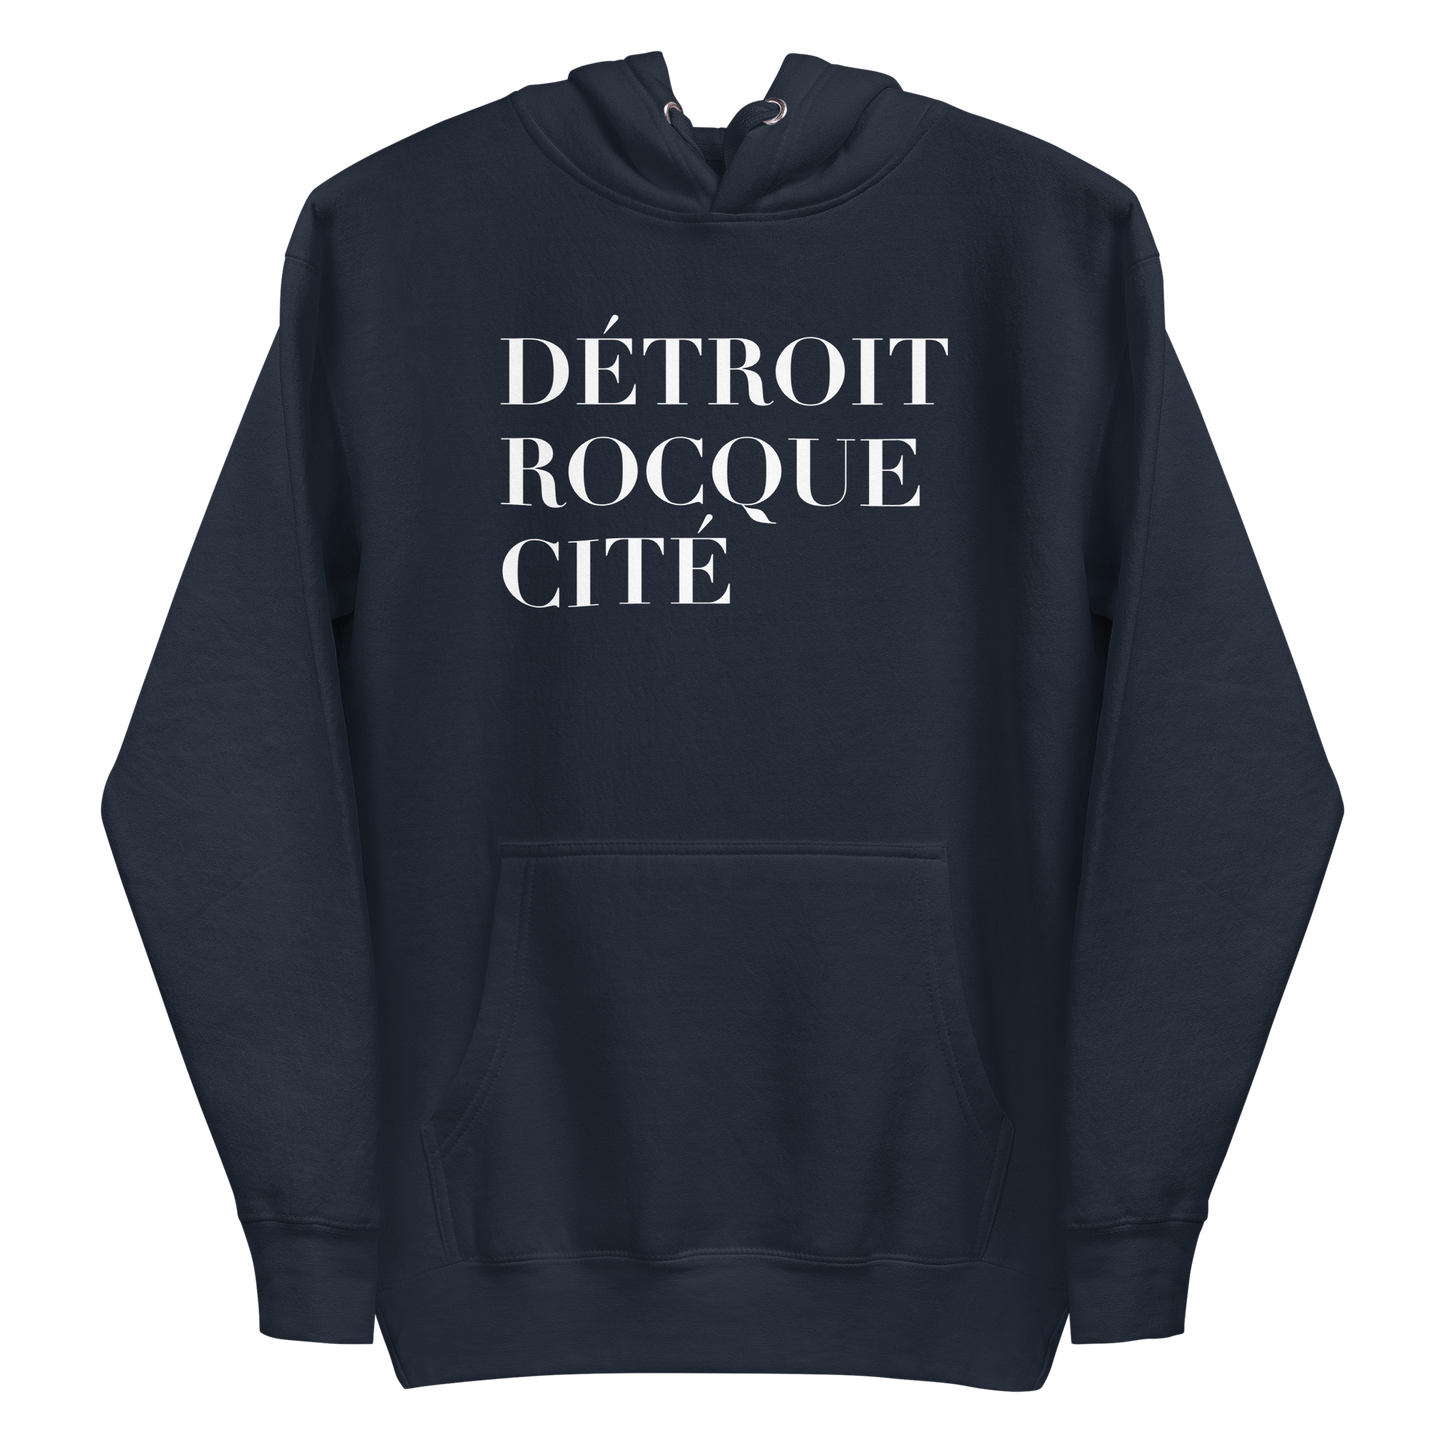 'Détroit Rocque Cité' Hoodie | Unisex Premium